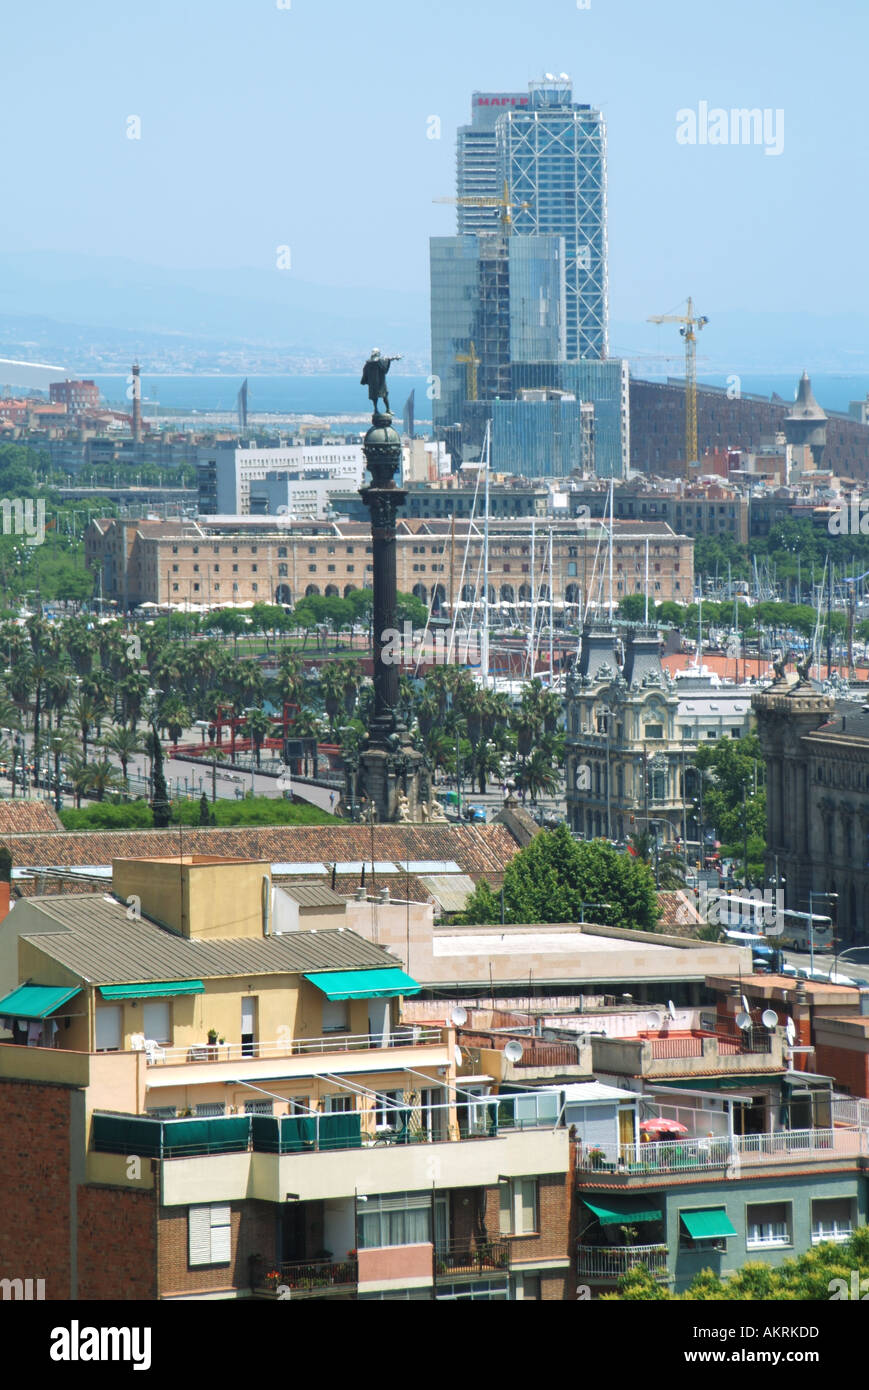 Blick auf Gebäude und Skyline in der dicht bevölkerten Stadt Barcelona eine spanische Stadtlandschaft in der Hauptstadt Kataloniens, Spanien, Europa, EU Stockfoto